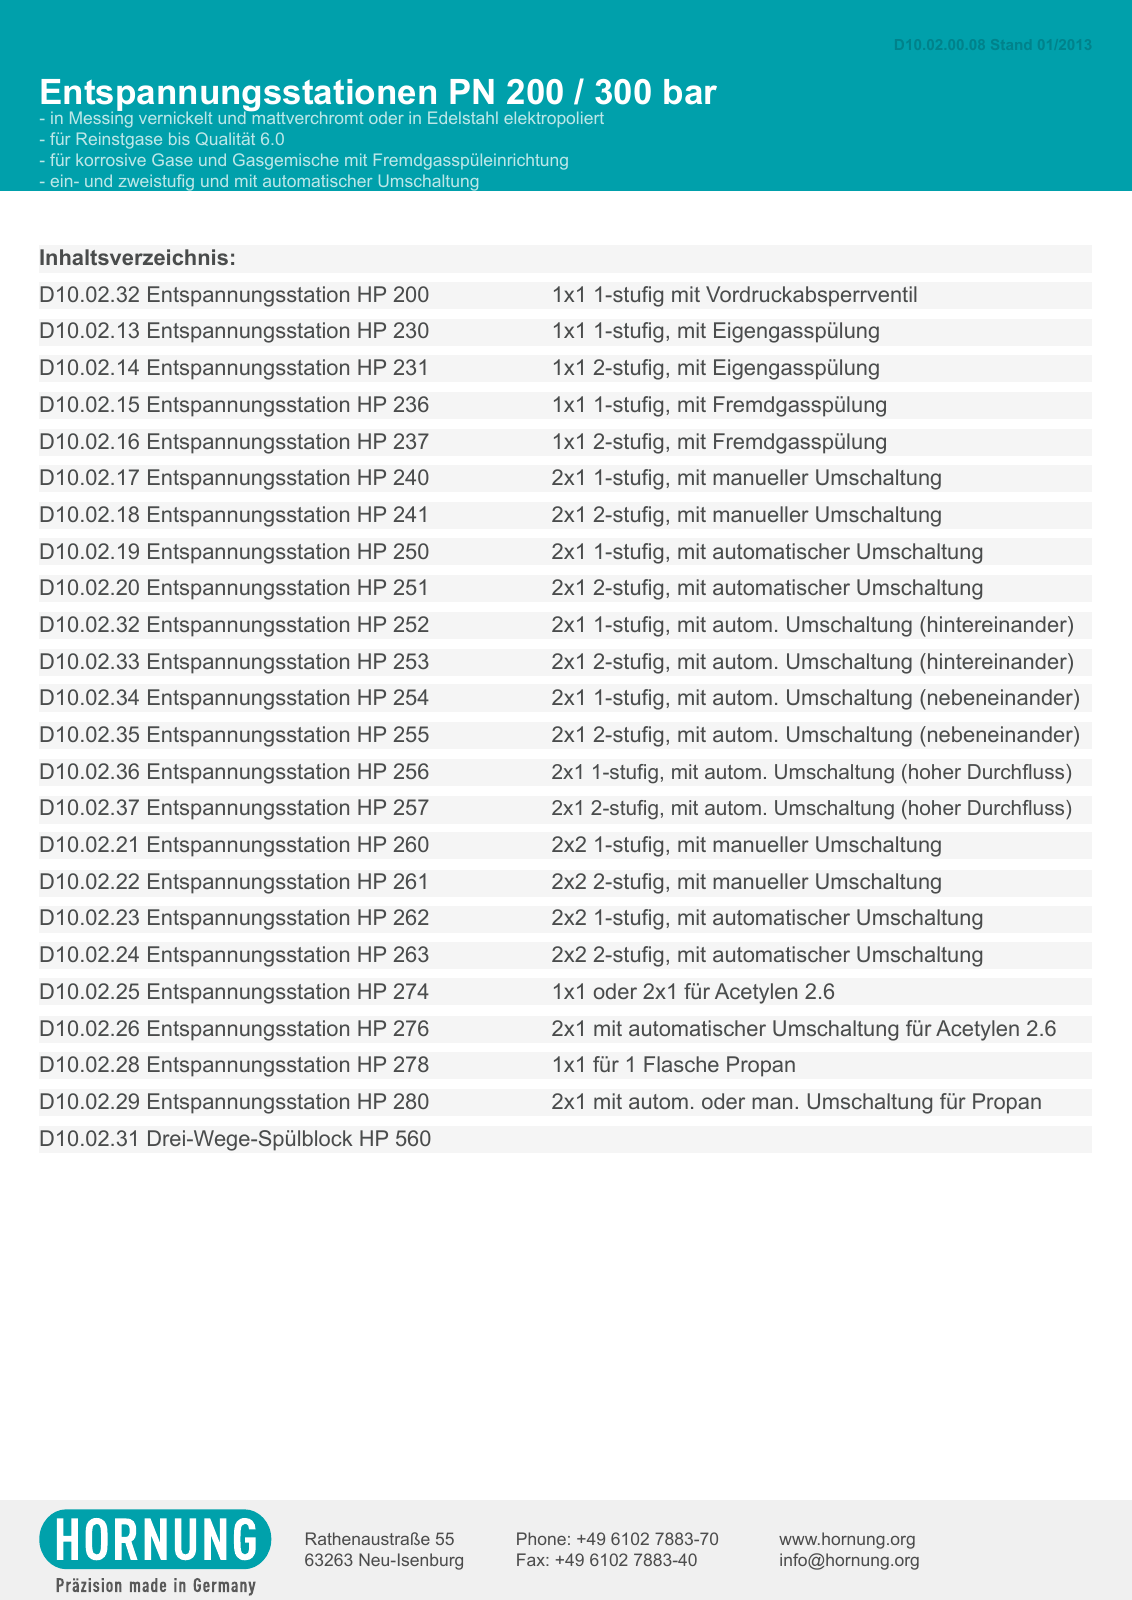 Vorschau Katalog Armaturen für Reinstgase - Hornung GmbH Seite 29